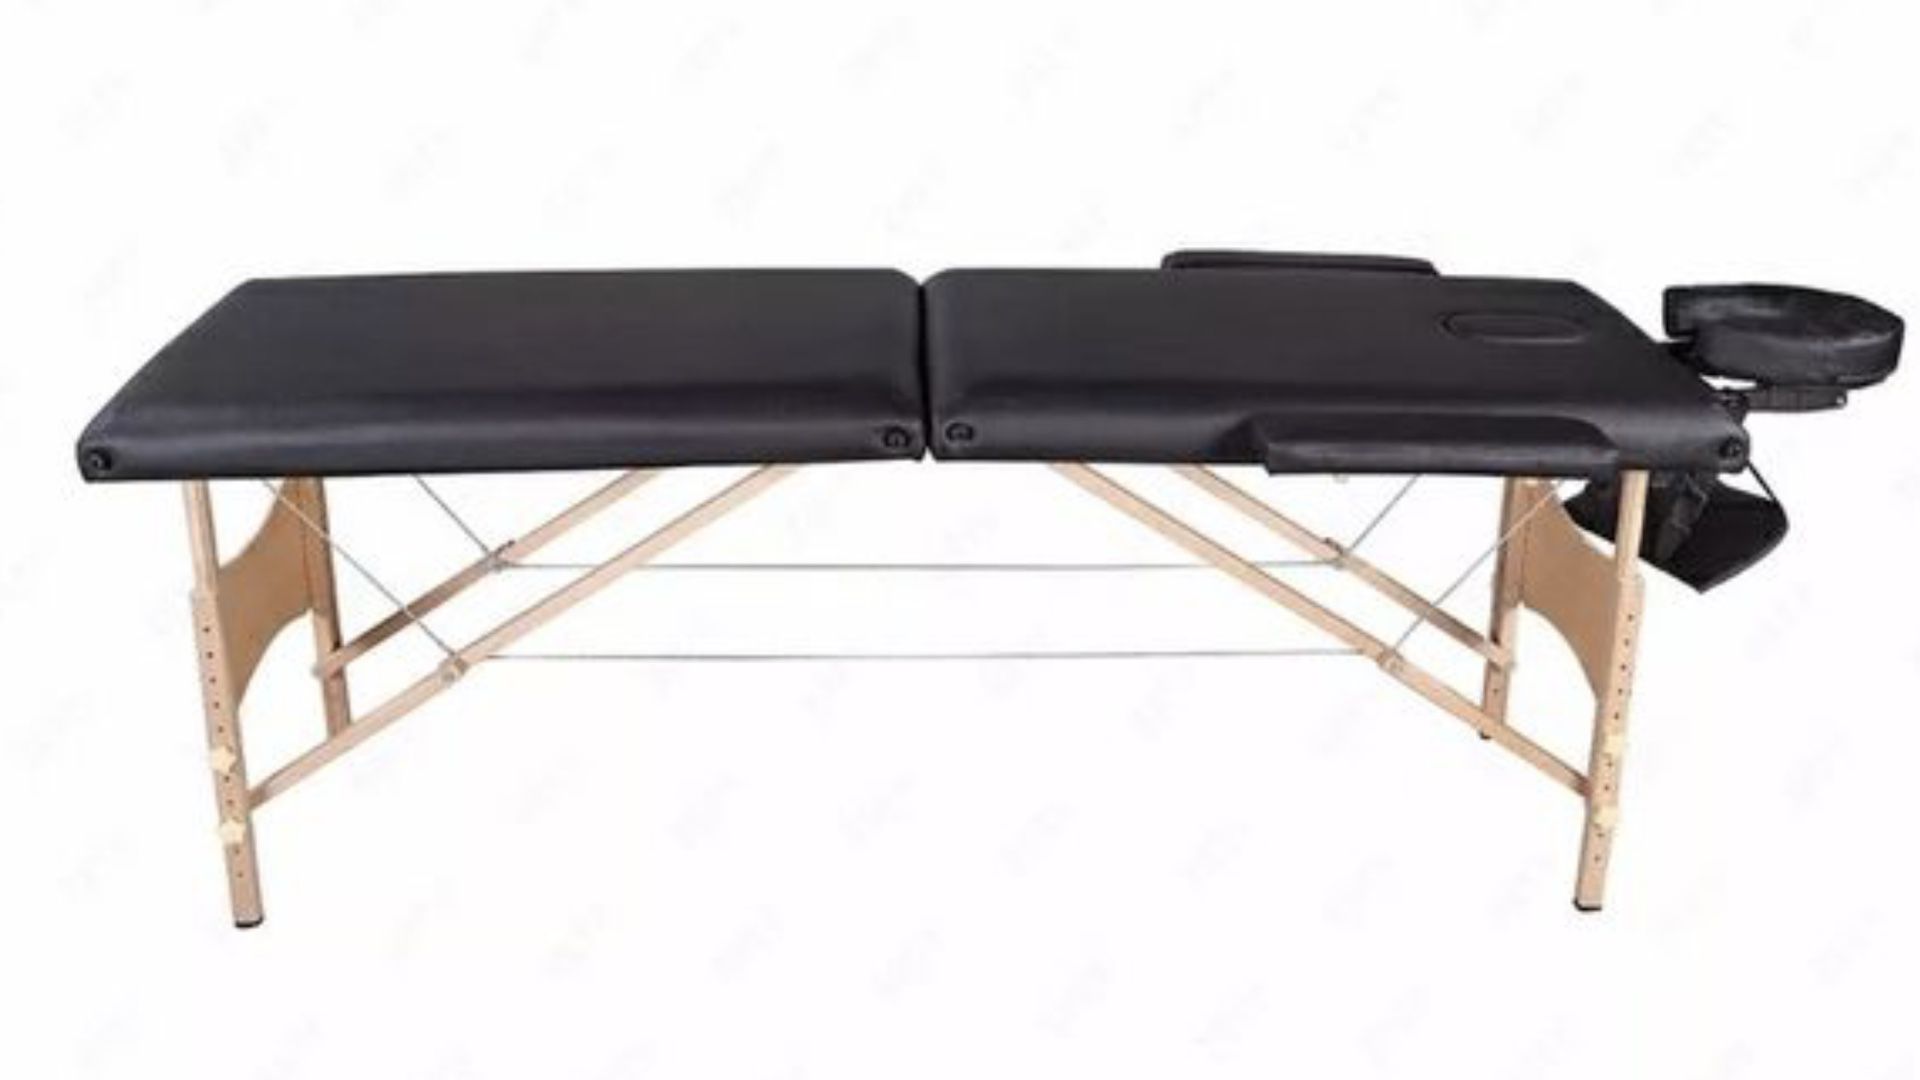 Voorstad vermijden Analytisch Portable massage table new for Sale in Orlando, FL - OfferUp